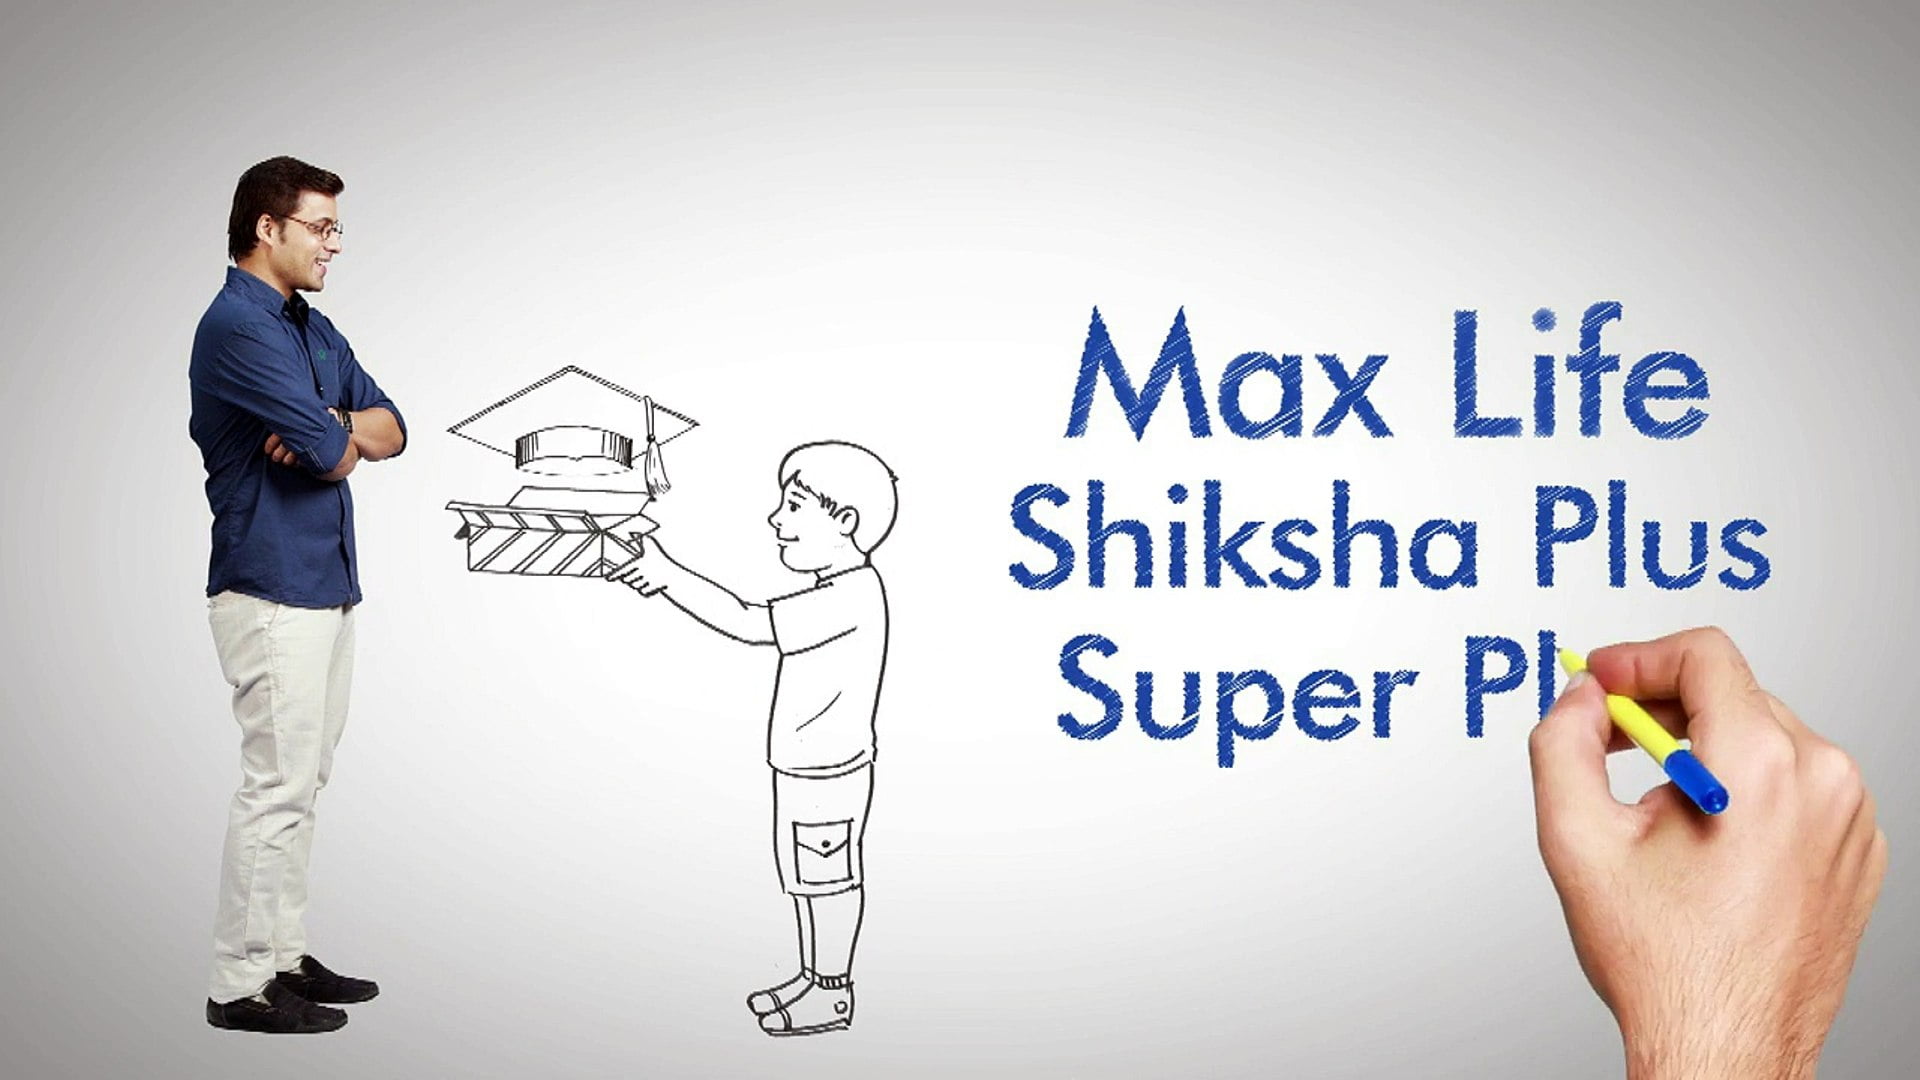 Max Life Shiksha Plus Plan